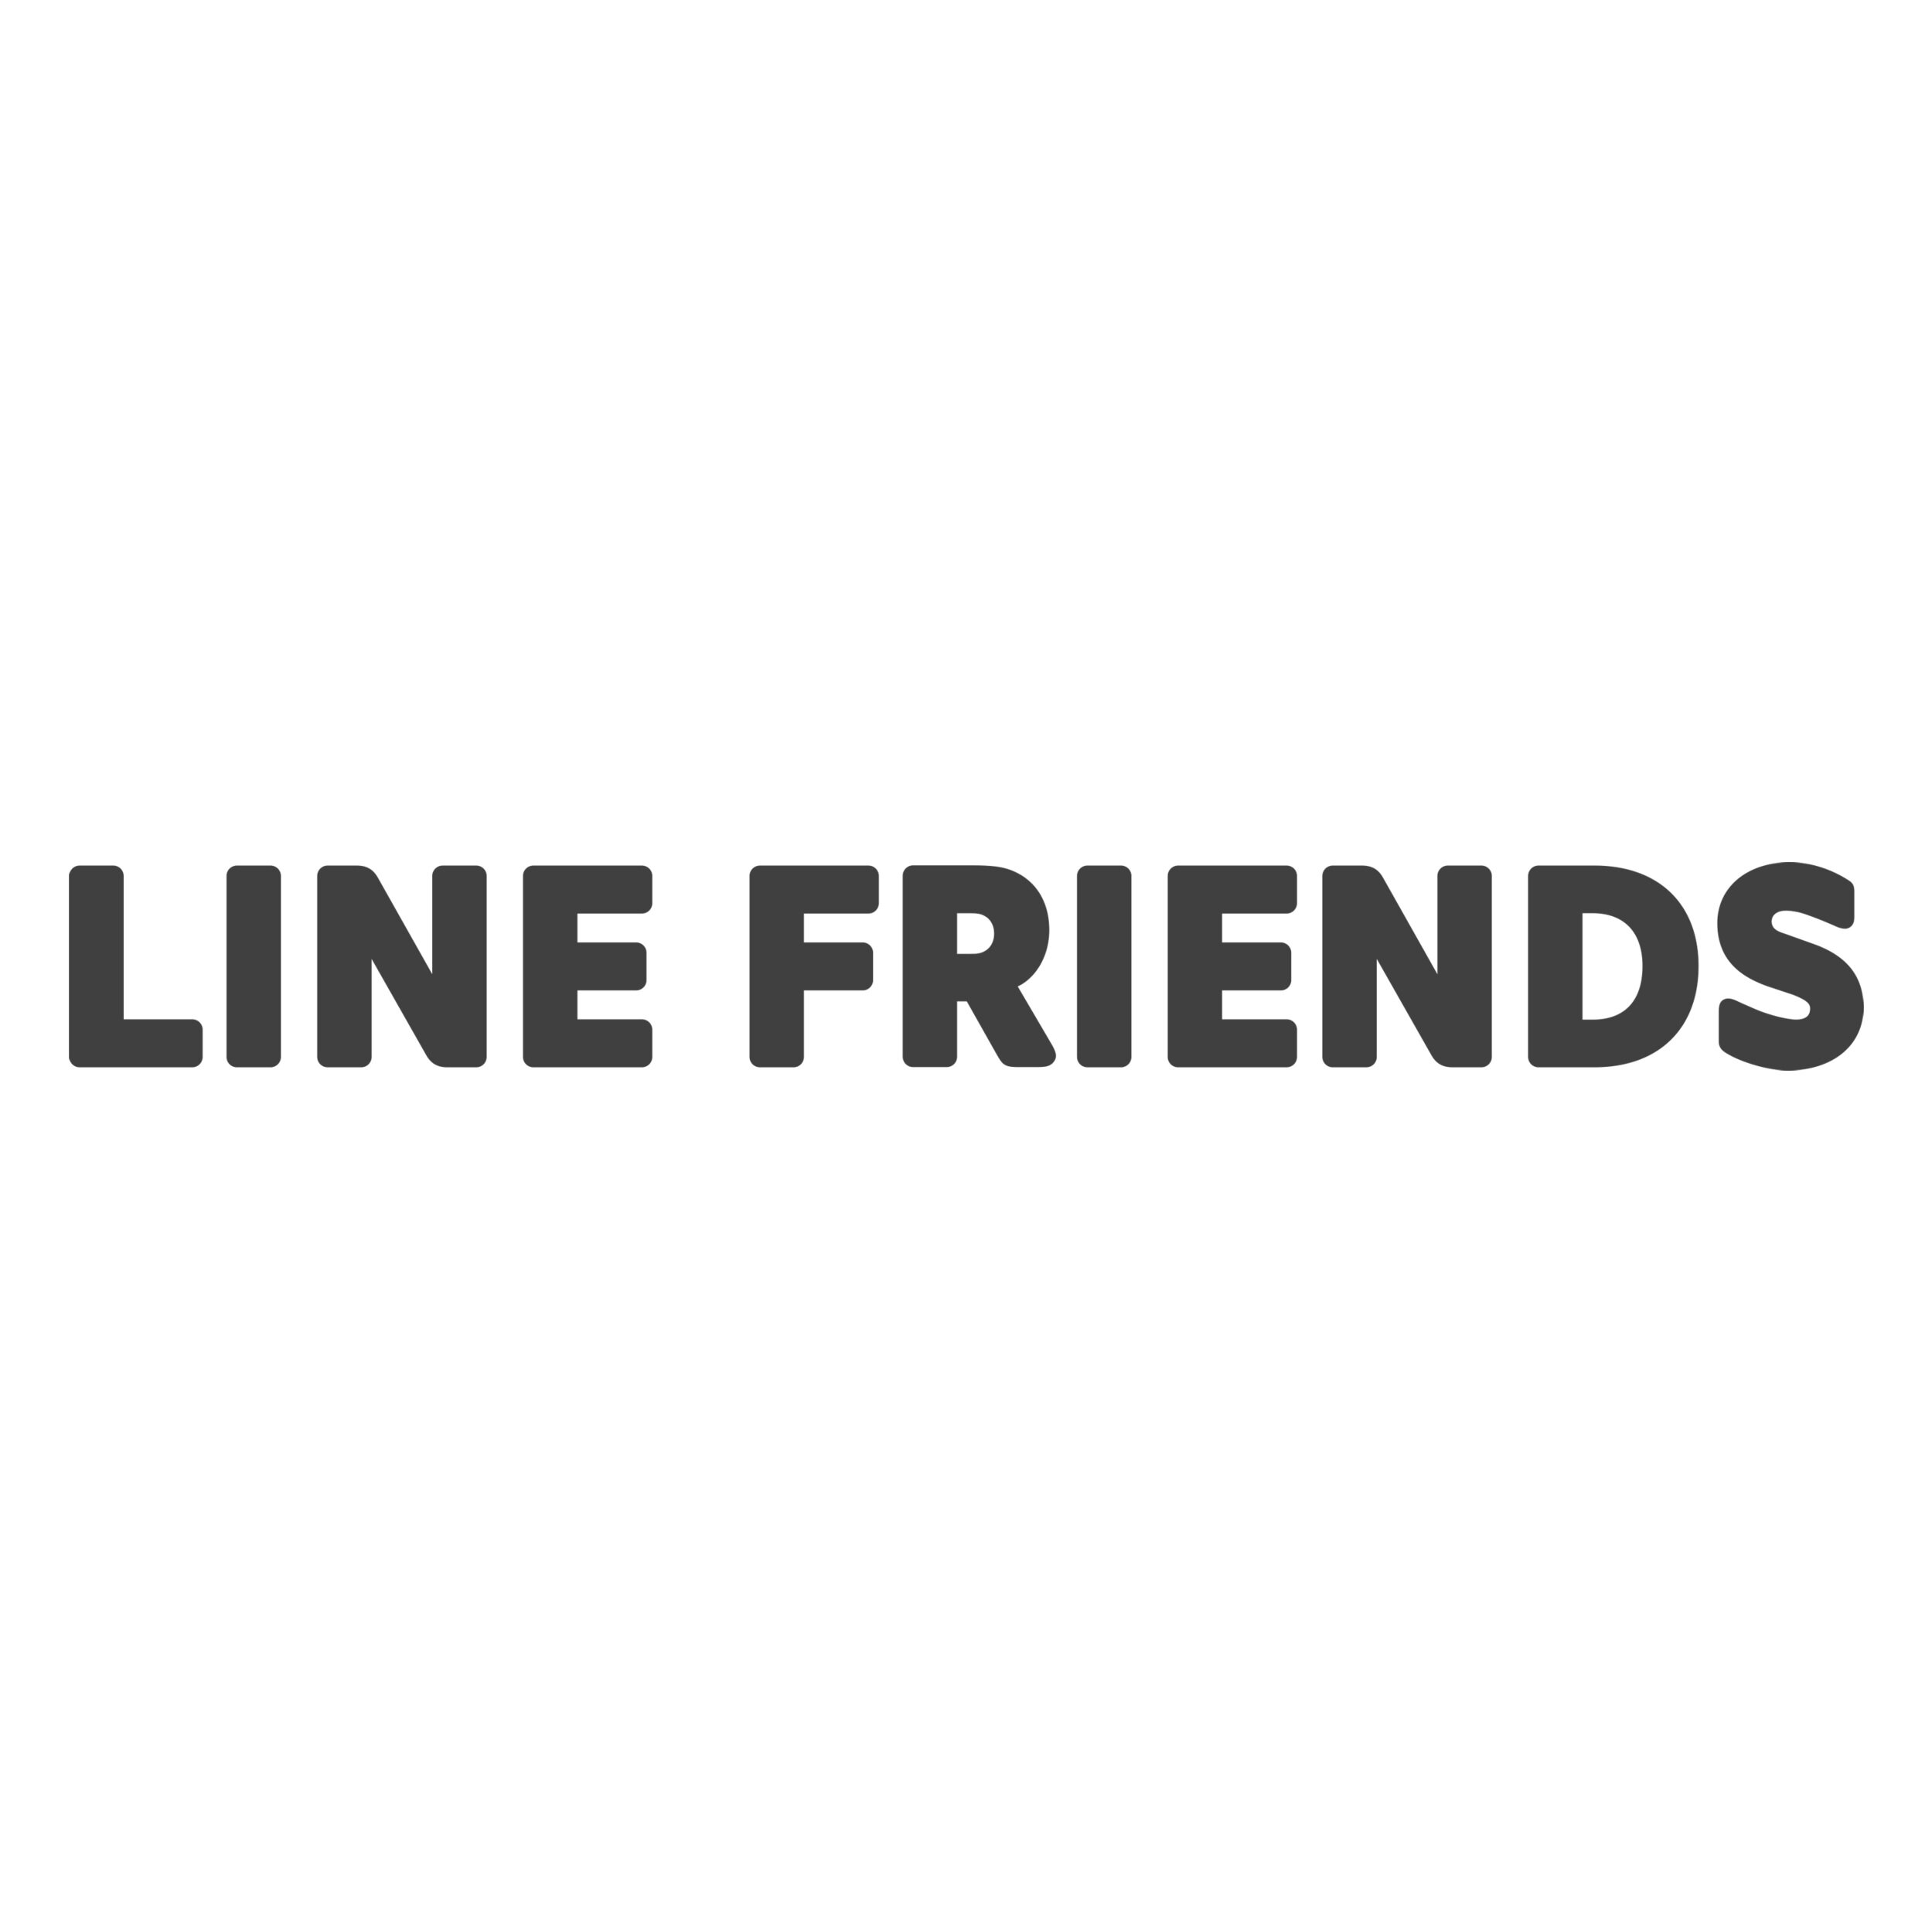 LineFriends.jpg